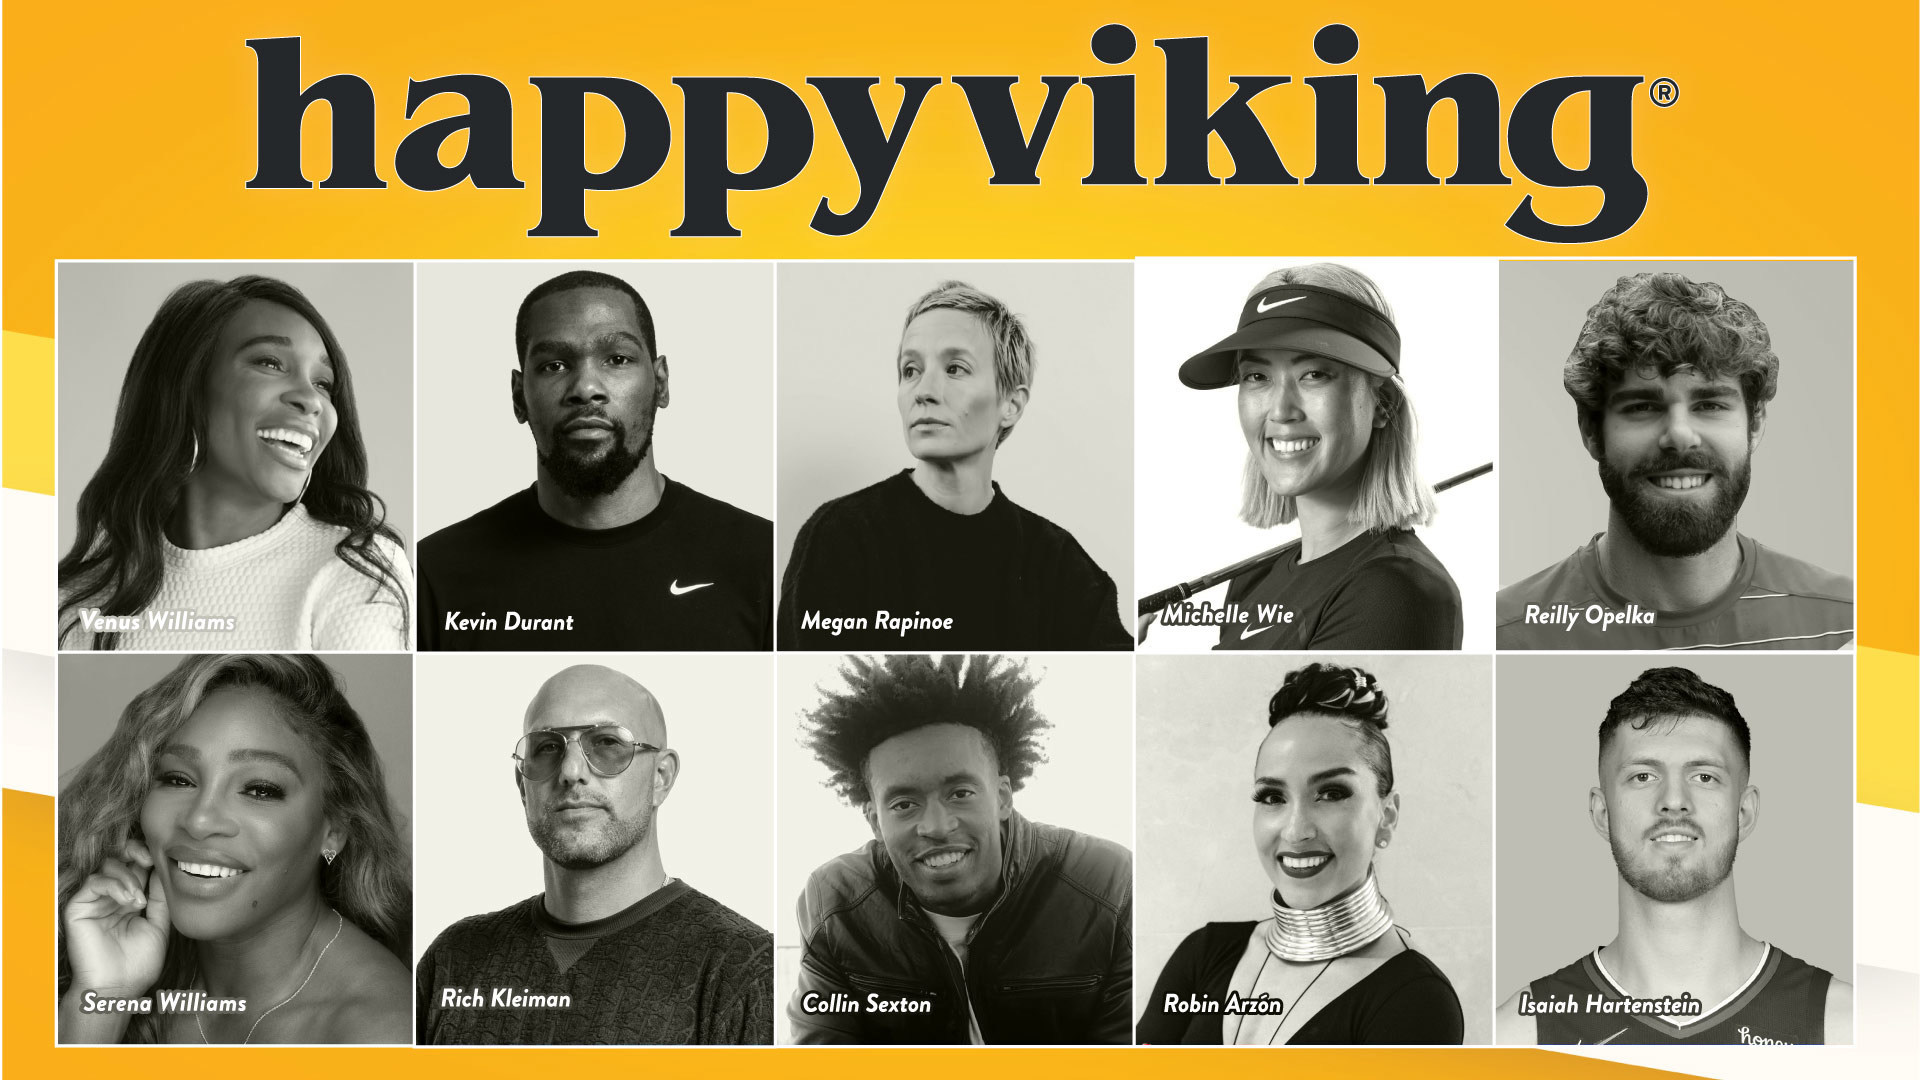 Happy Viking backers